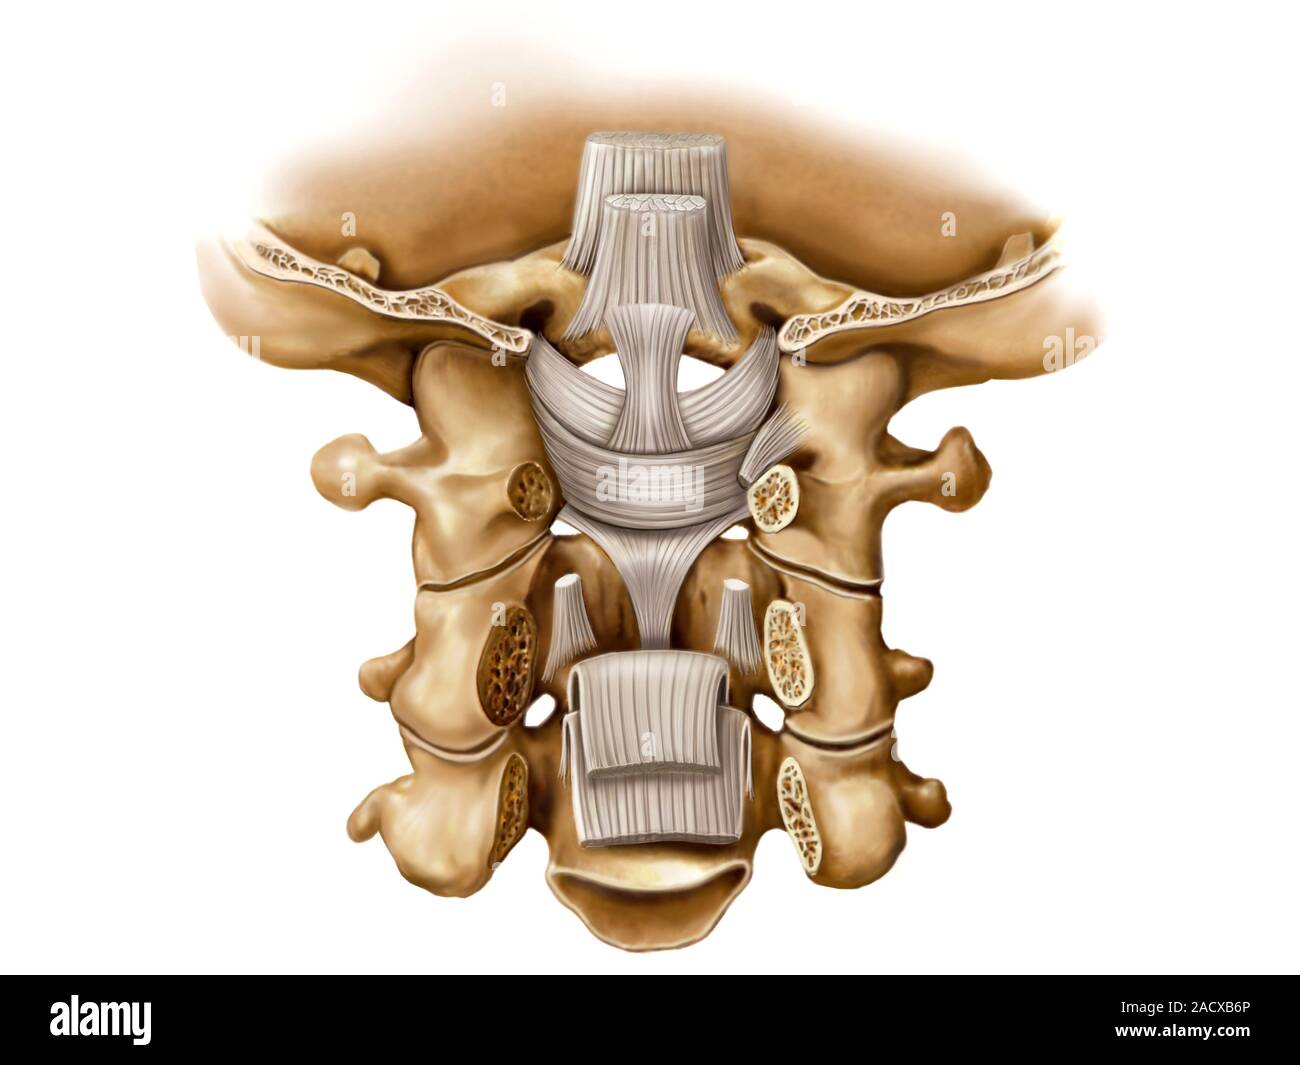 Darstellung der superior und inferior Gelenke von Kopf und Hals. Das hintere  Ansicht Abbildung wird von "Asklepios Atlas der menschlichen Anatomie'  Stockfotografie - Alamy